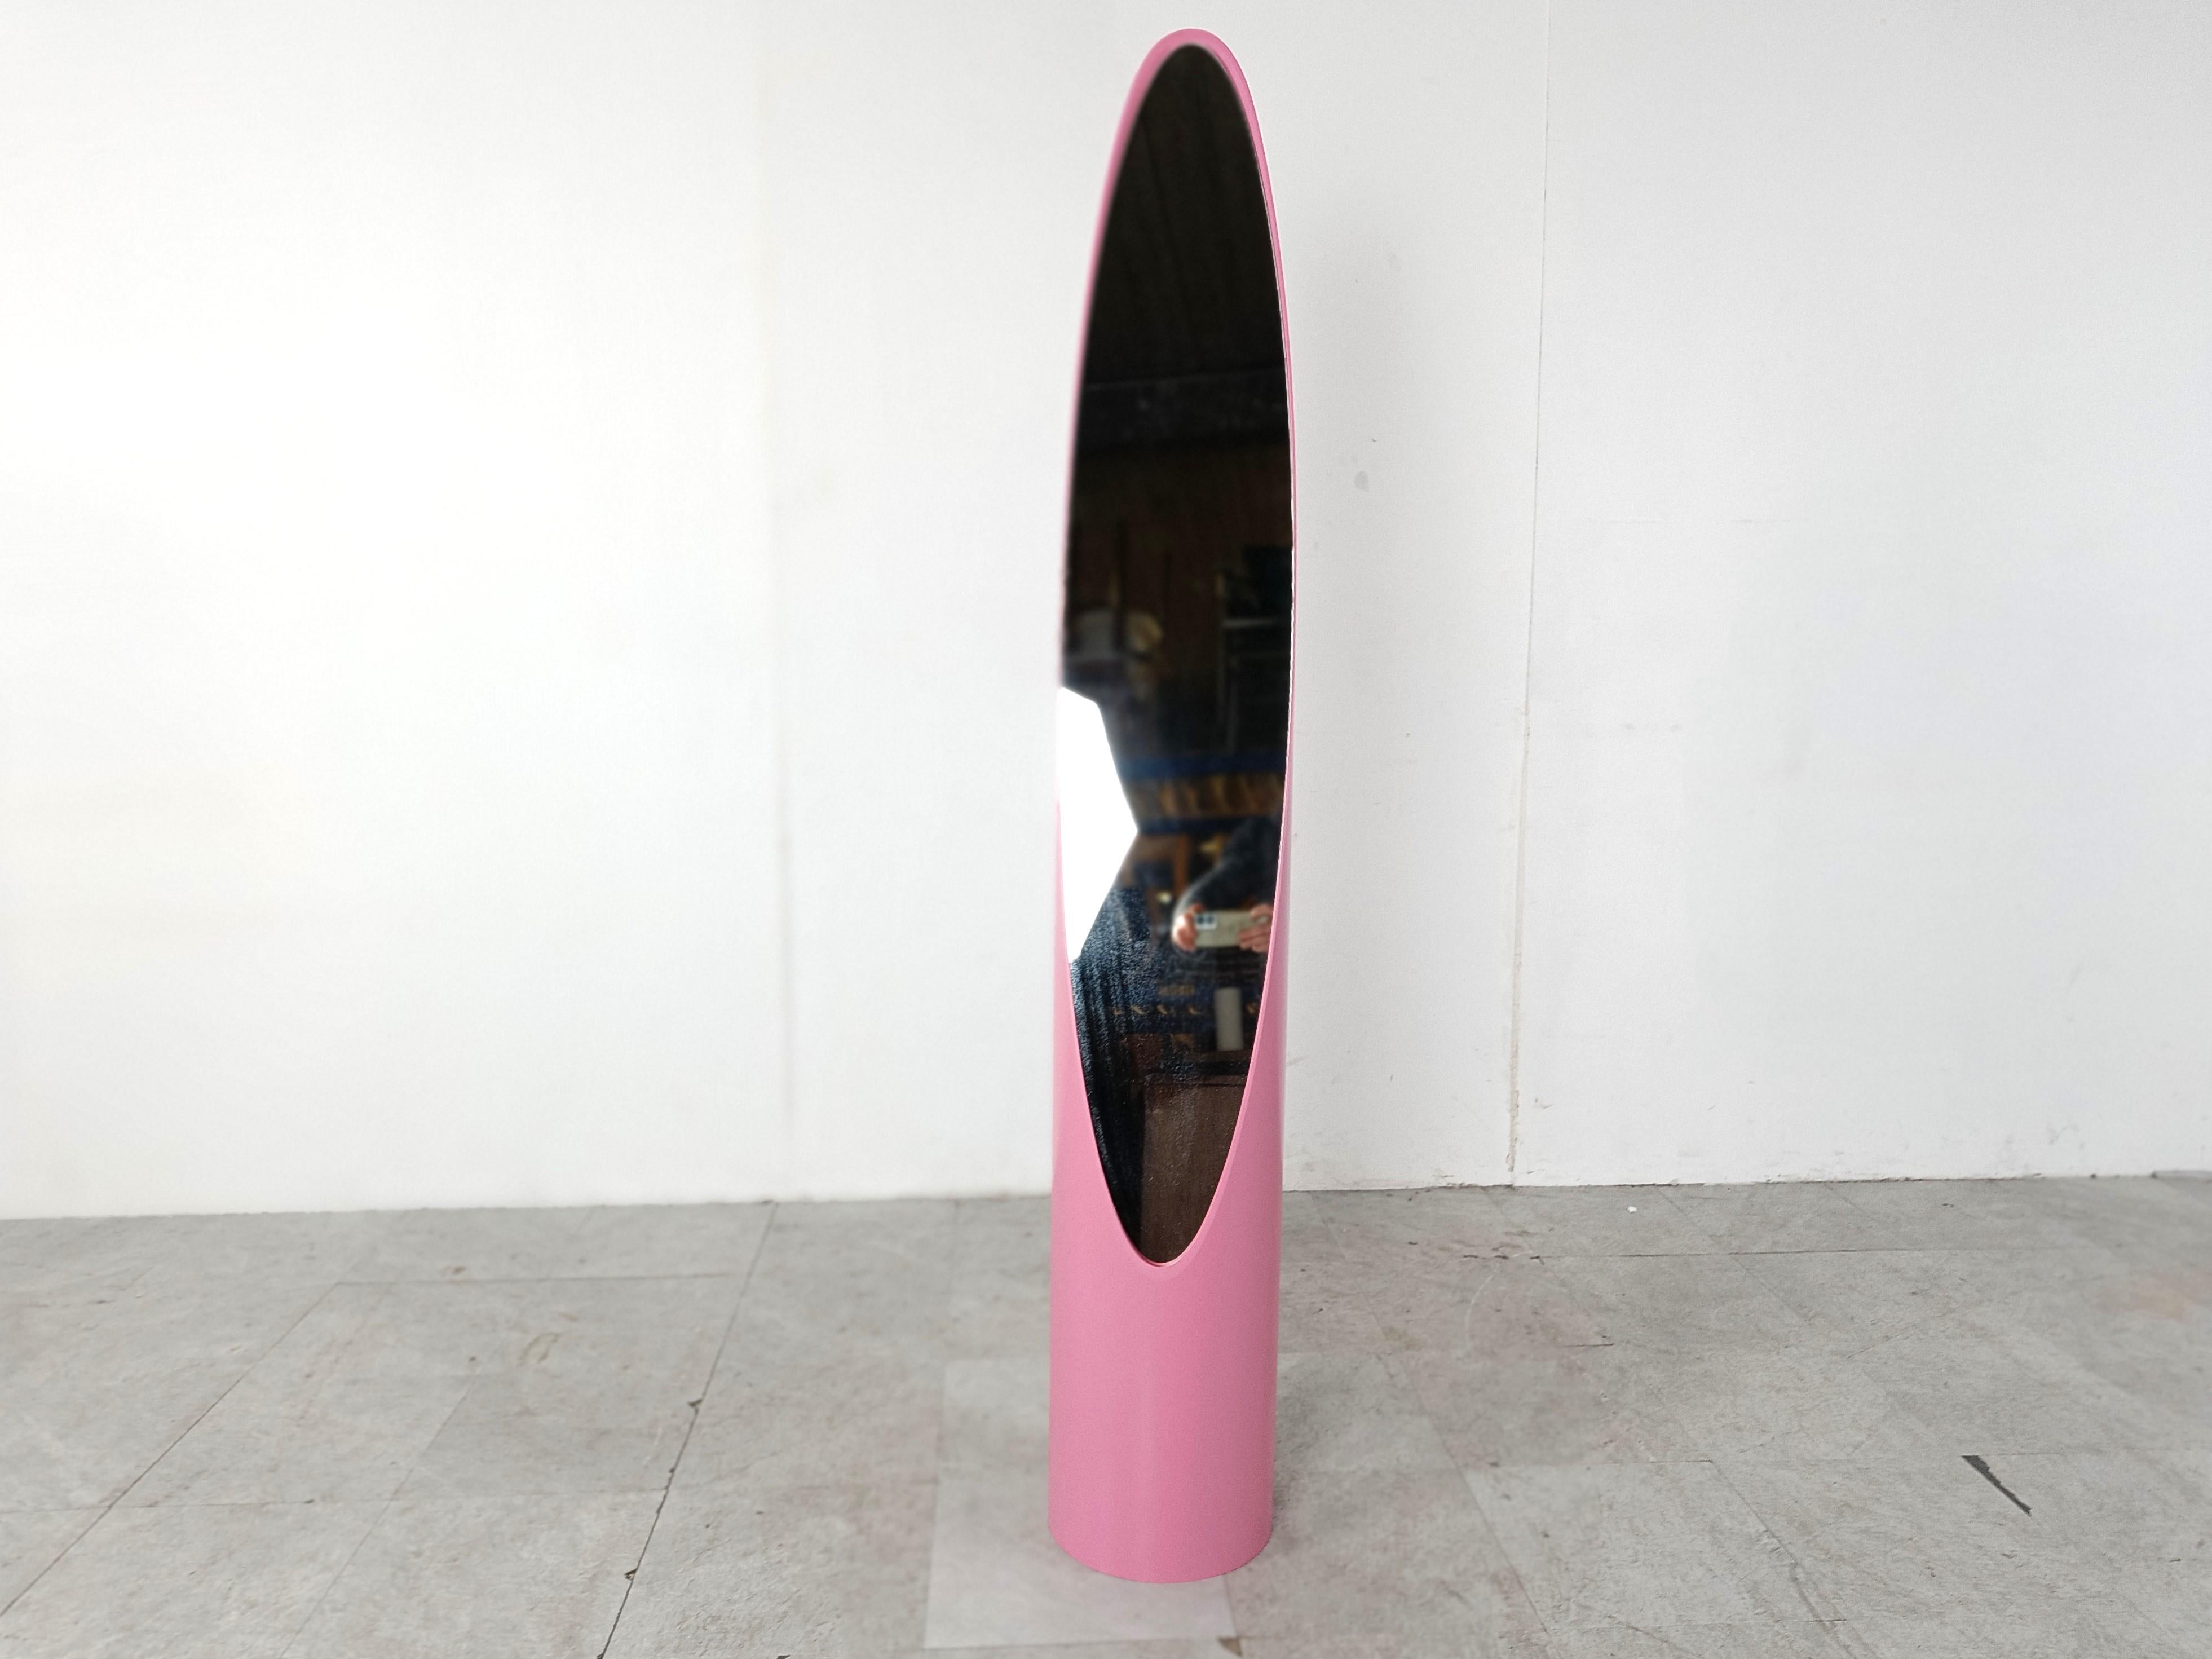 Miroir de sol Vintage 'Lipstick' conçu par Rodolfo Bonetto

bon état.

Un grand design intemporel

Années 1970 - Italie

Dimensions :
Hauteur : 164cm/64.56